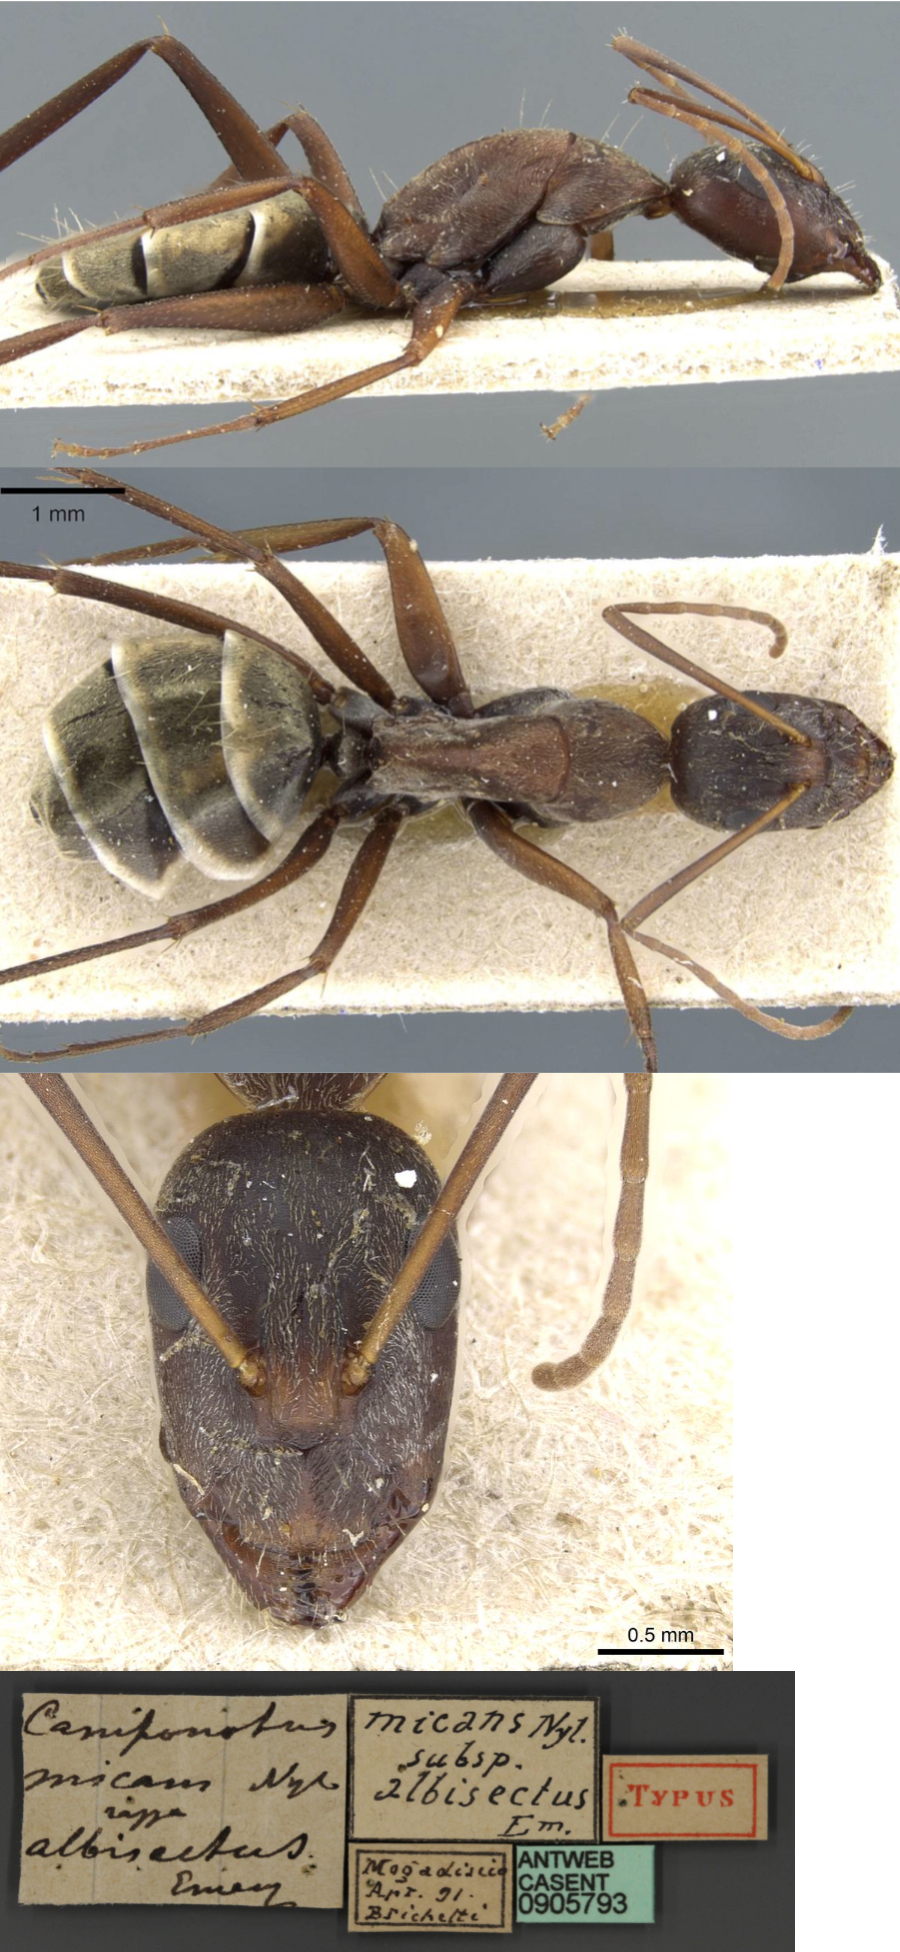 {Camponotus flavomarginatus albisectus minor}